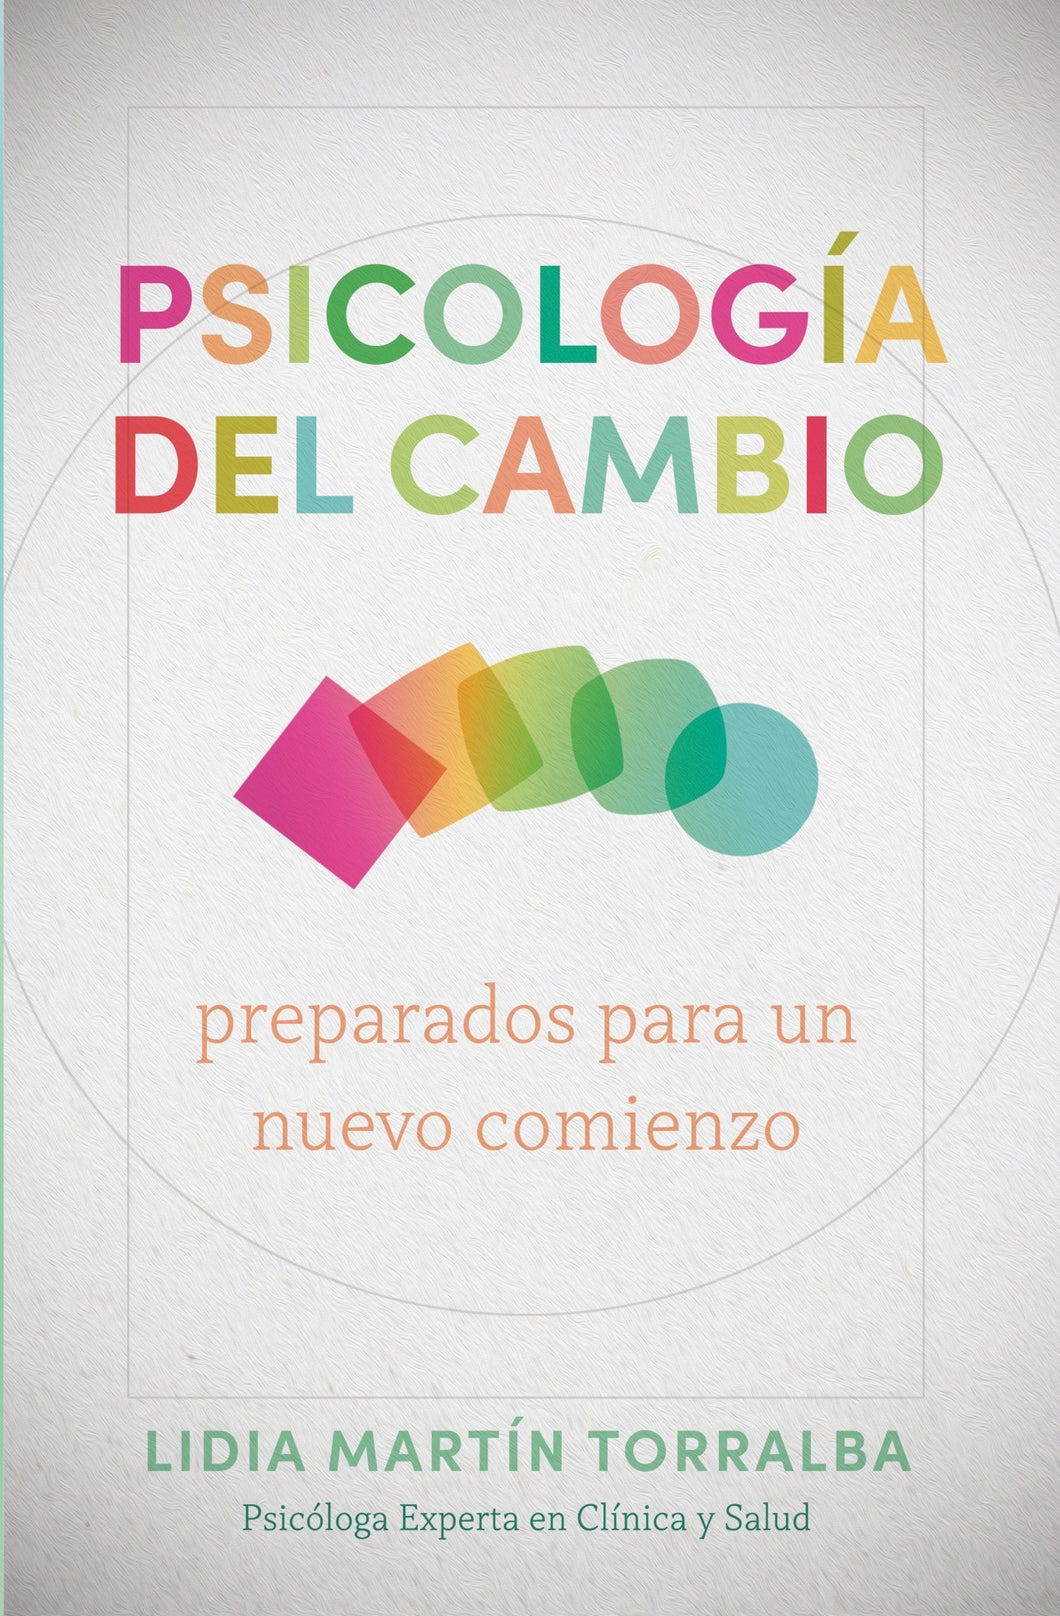 Spanish-Psicologia Del Cambio